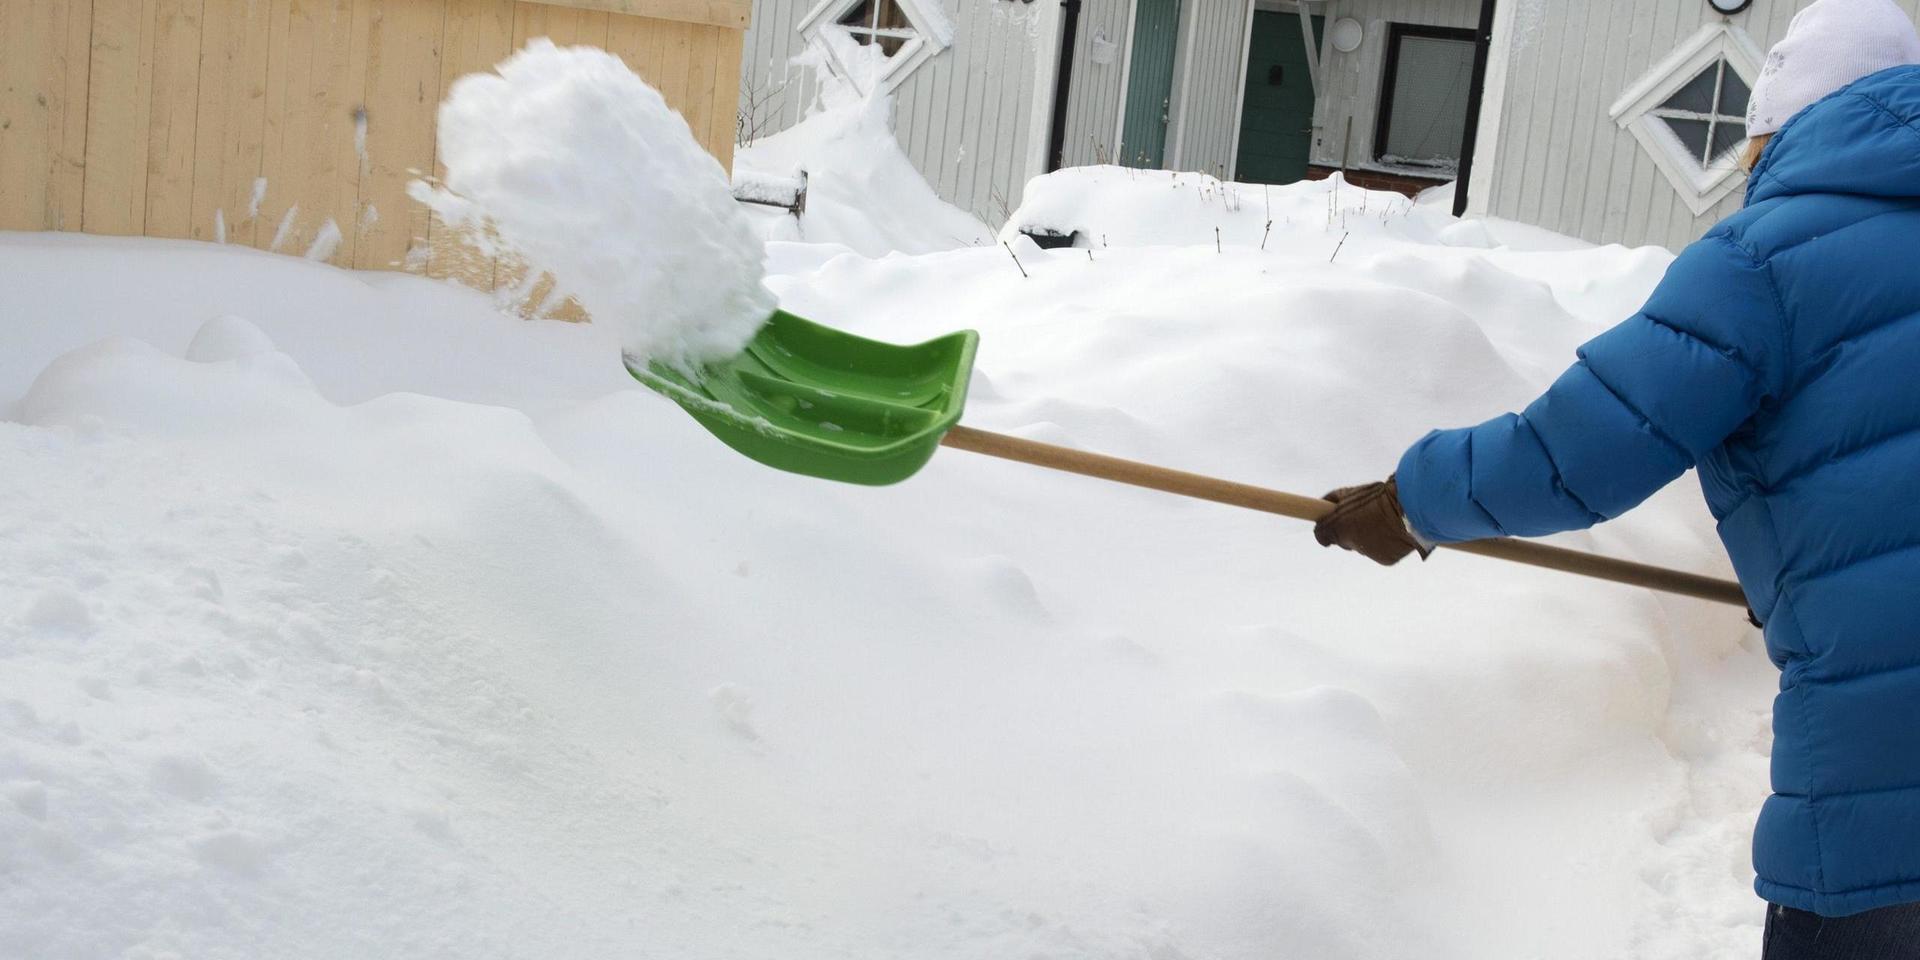 Även om regeringen klamrar sig fast vid att småhusägare ska skotta snö på gångbanor och många kommuner likaså, så behöver inte Göteborgs kommun göra detta, skriver insändaren.